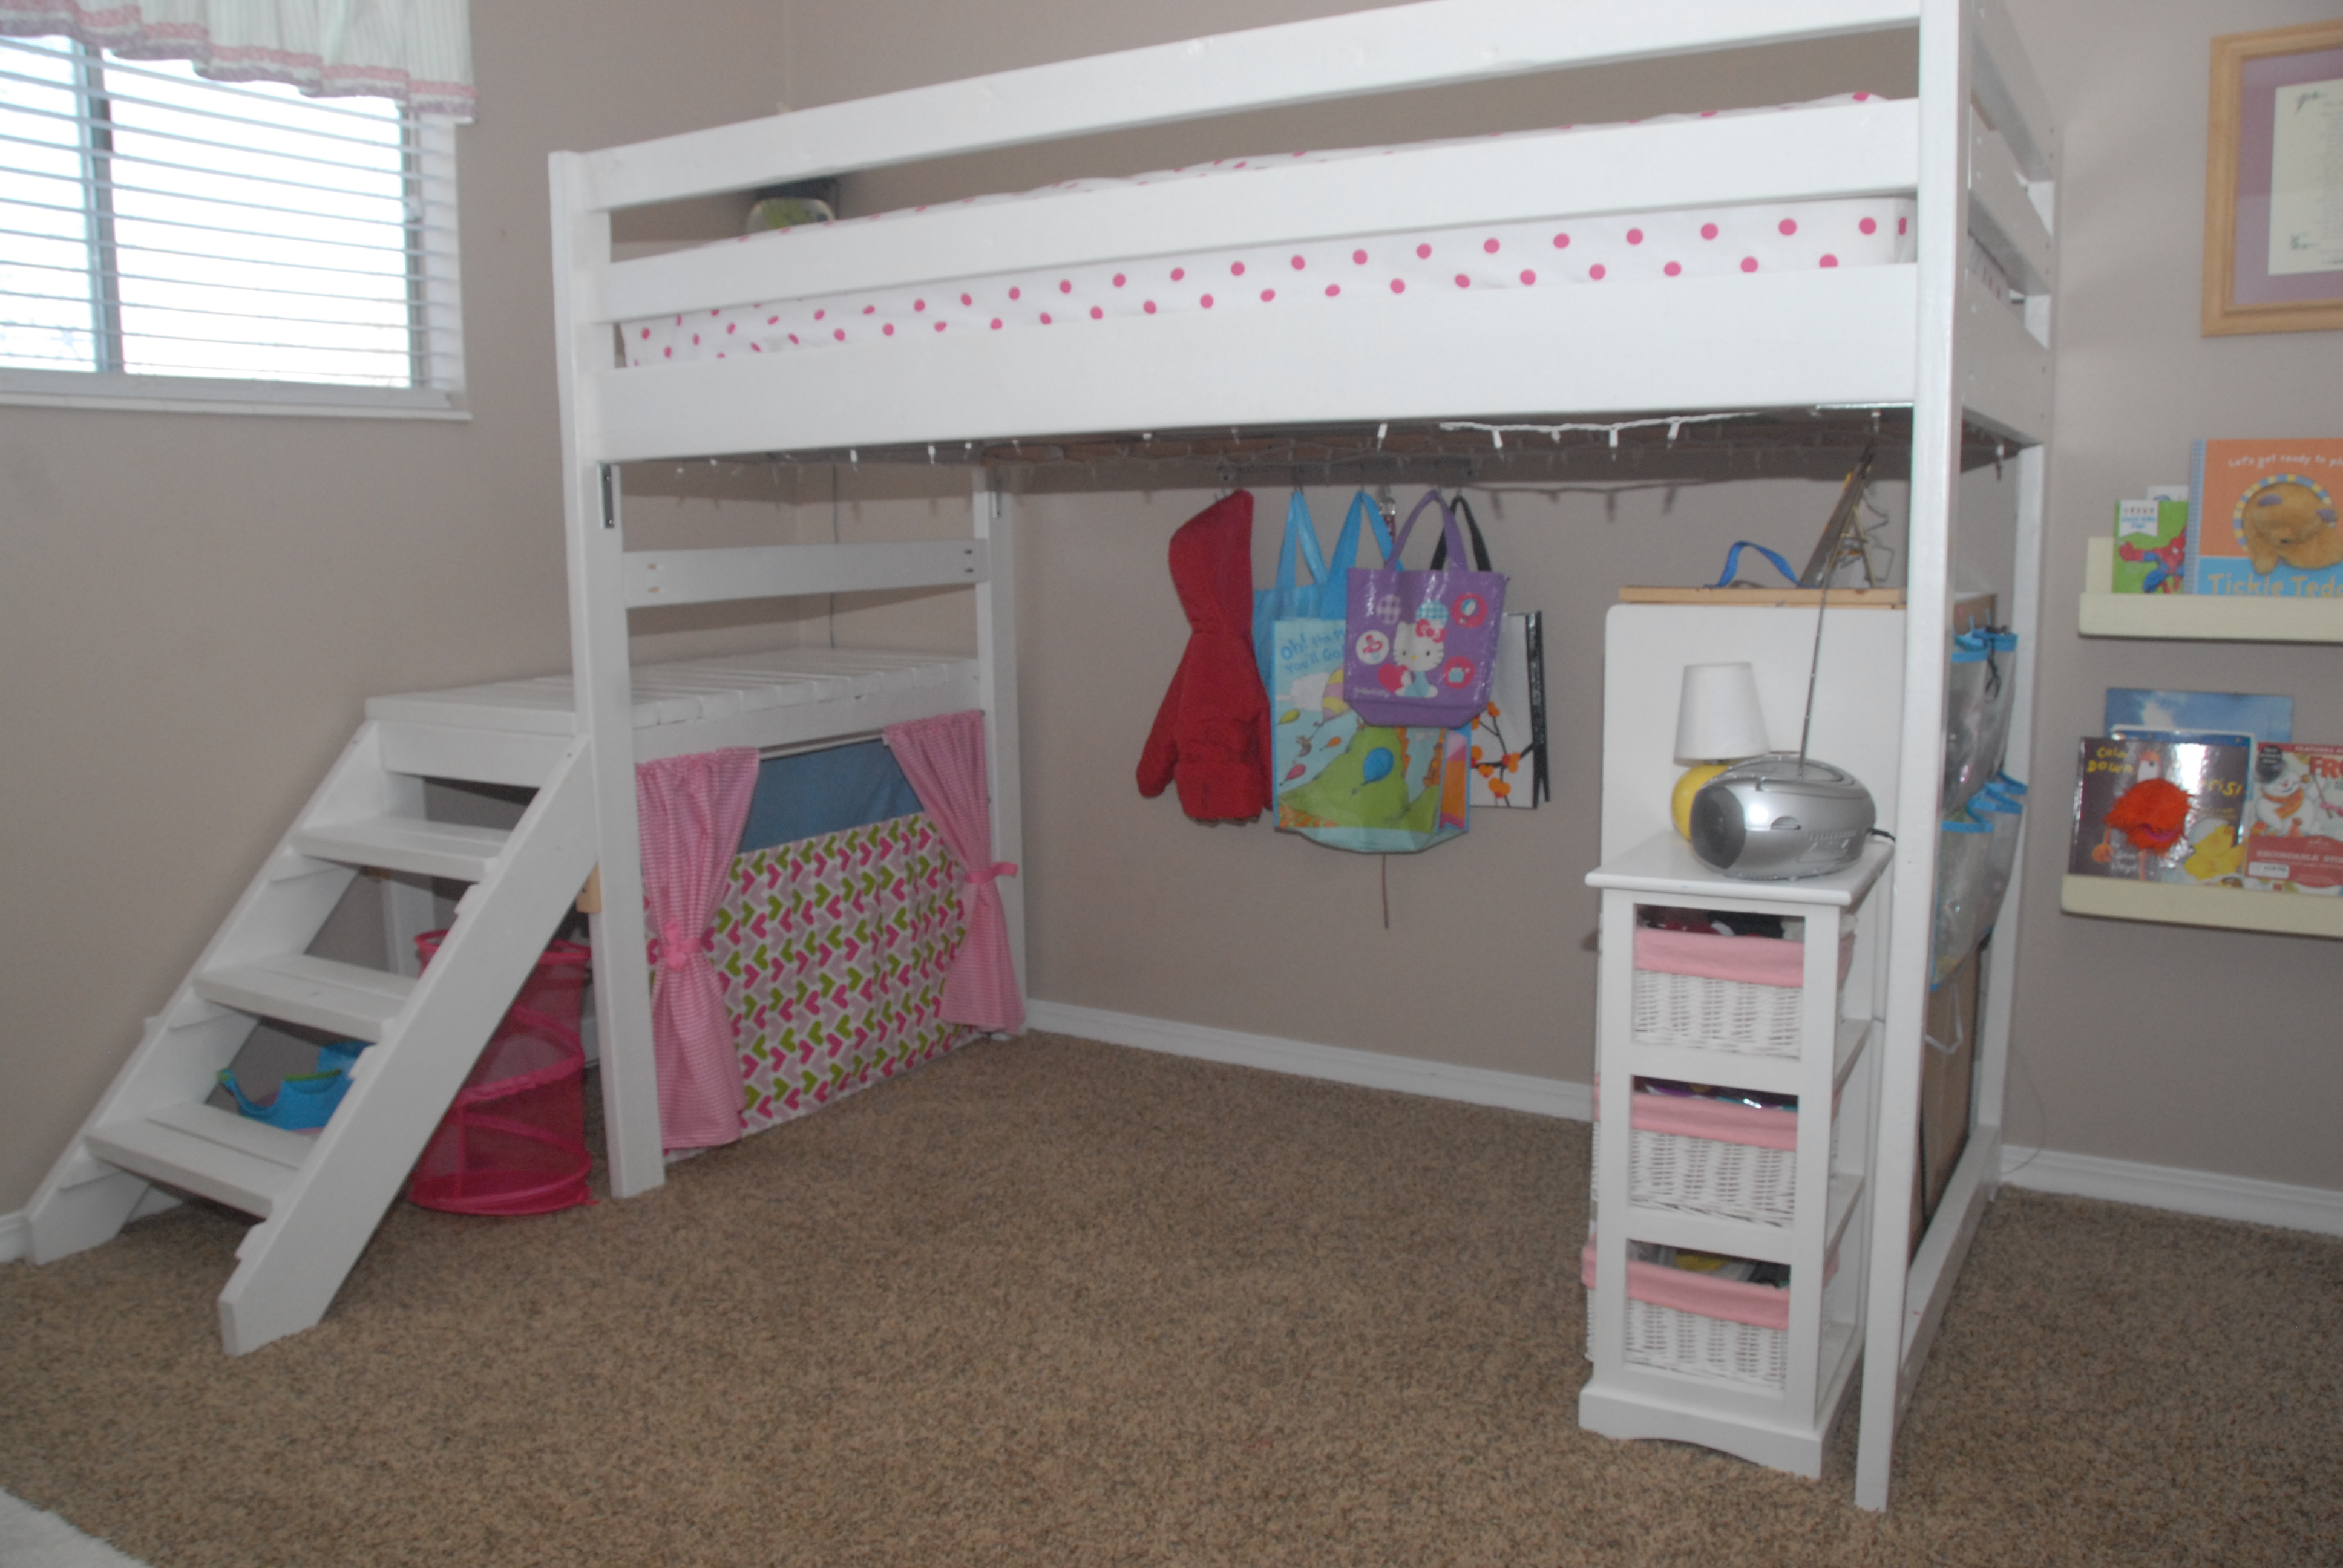 cheap loft beds for kids